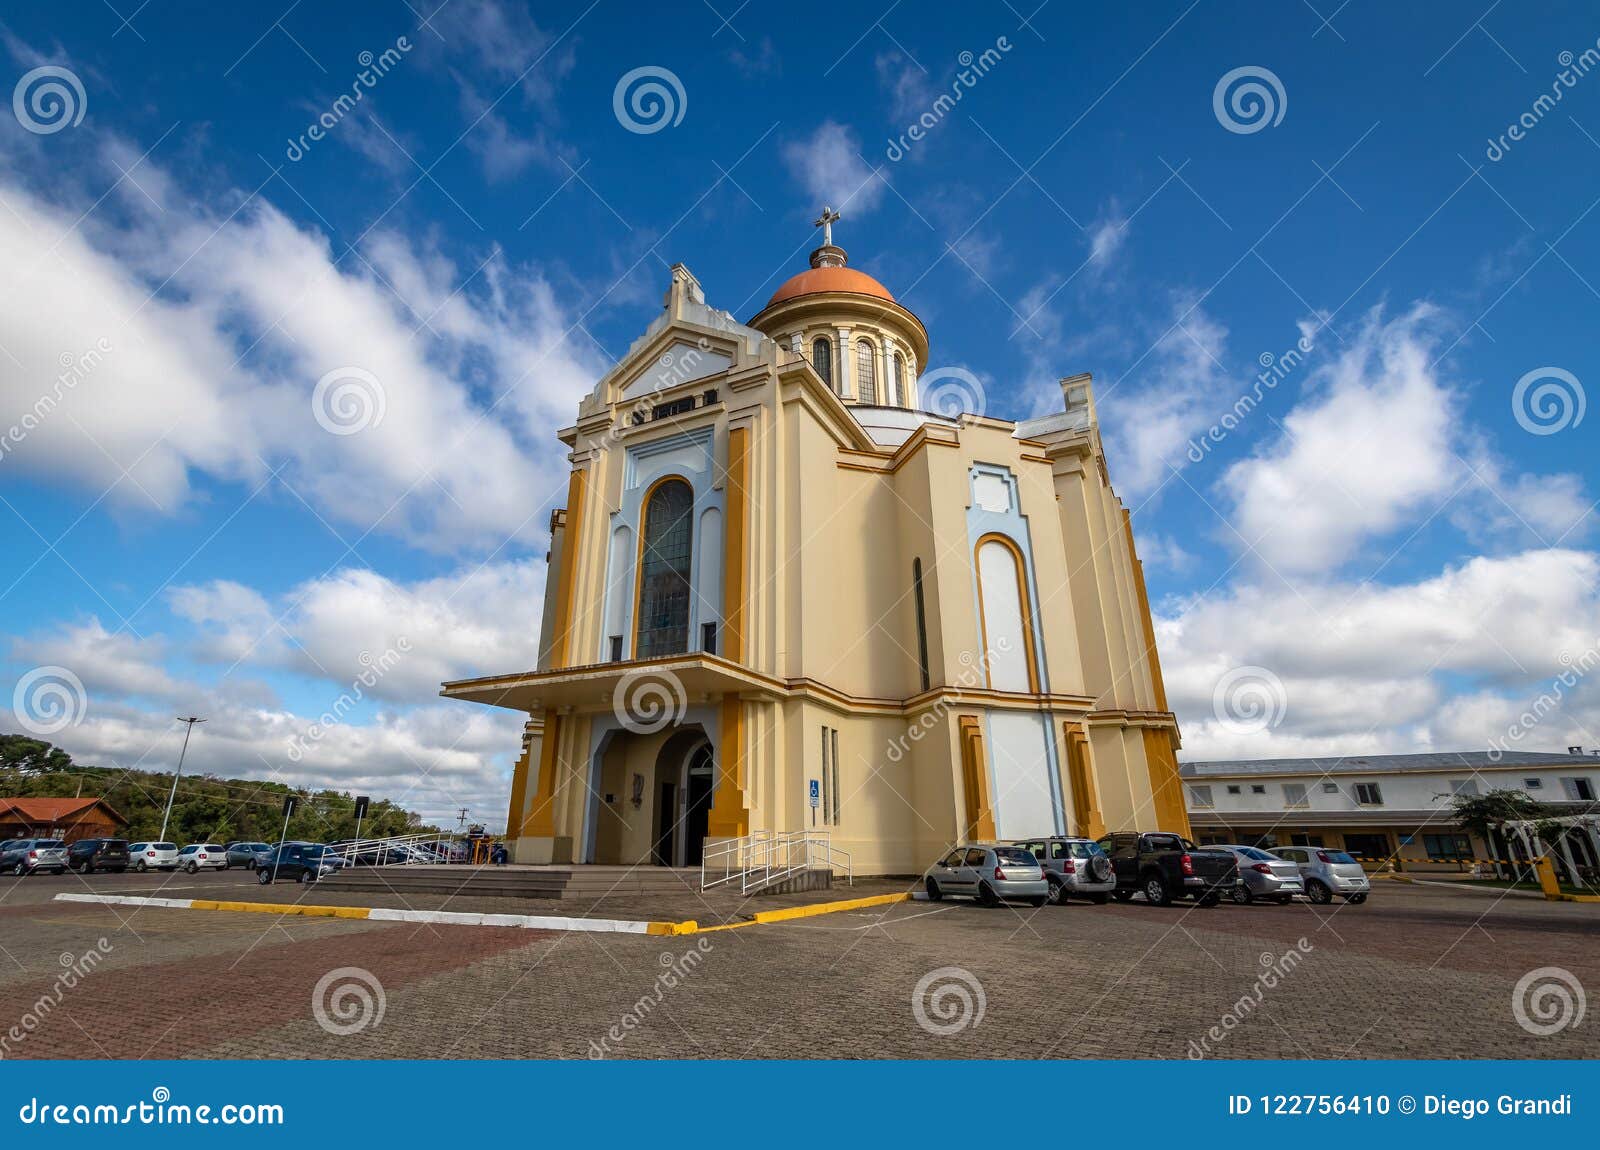 nossa senhora de caravaggio sanctuary church - farroupilha, rio grande do sul, brazil